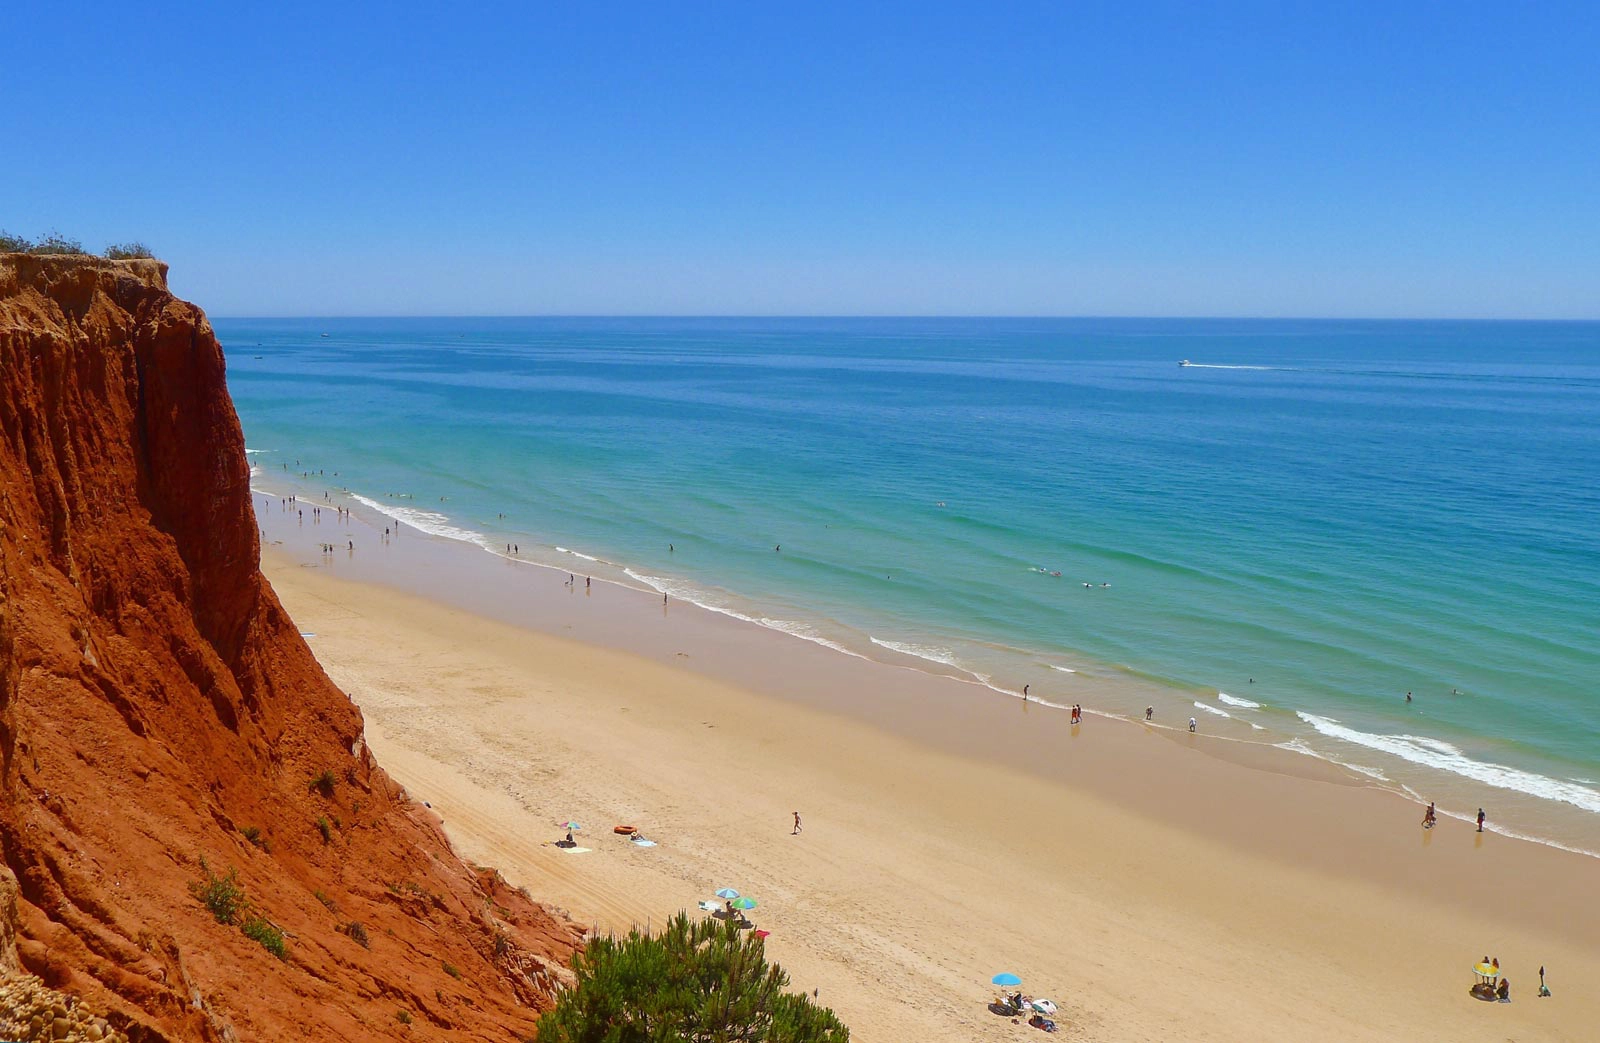  Falesia  strand - Algarve